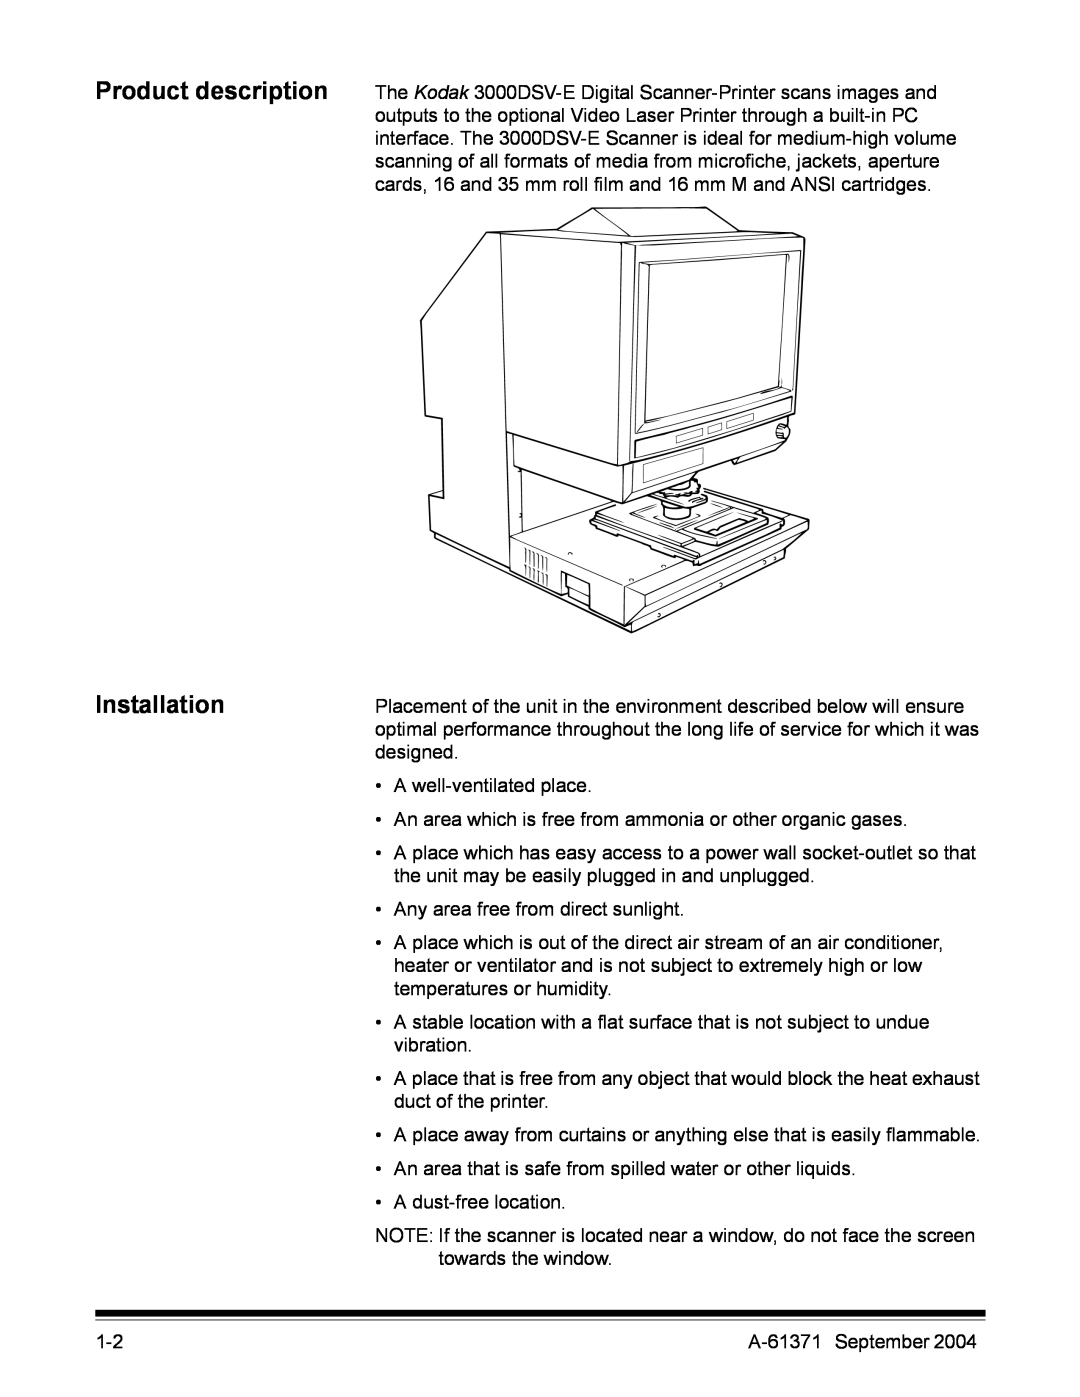 Kodak 3000DSV-E manual Product description Installation 